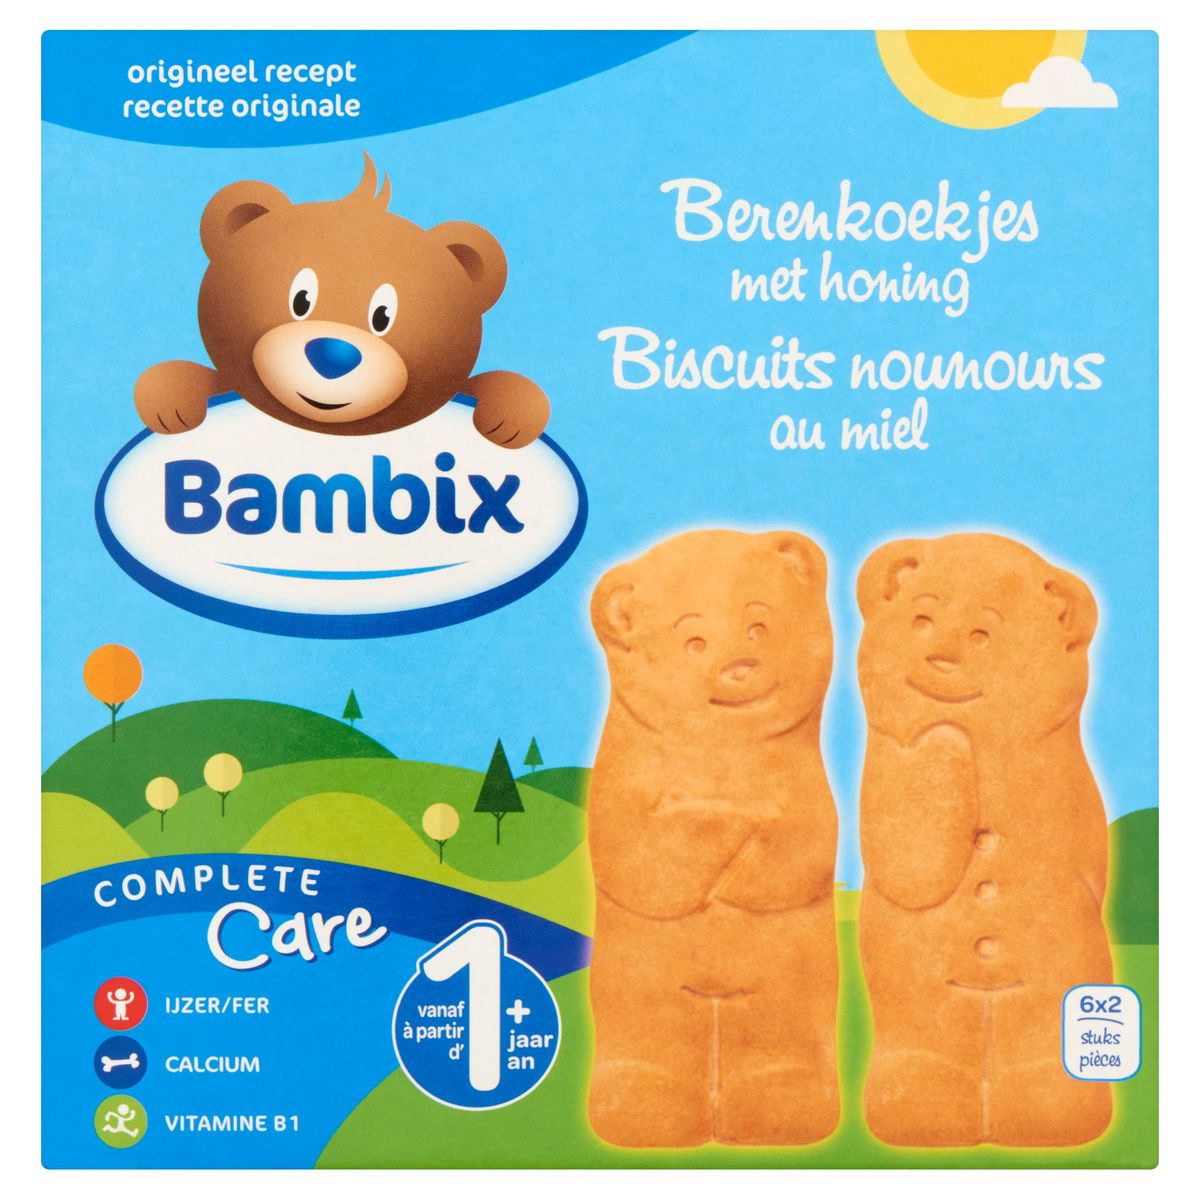 Bambix Biscuits Nounours au Miel à Partir d' 1+ An 6 x 2 Pièces 150 g